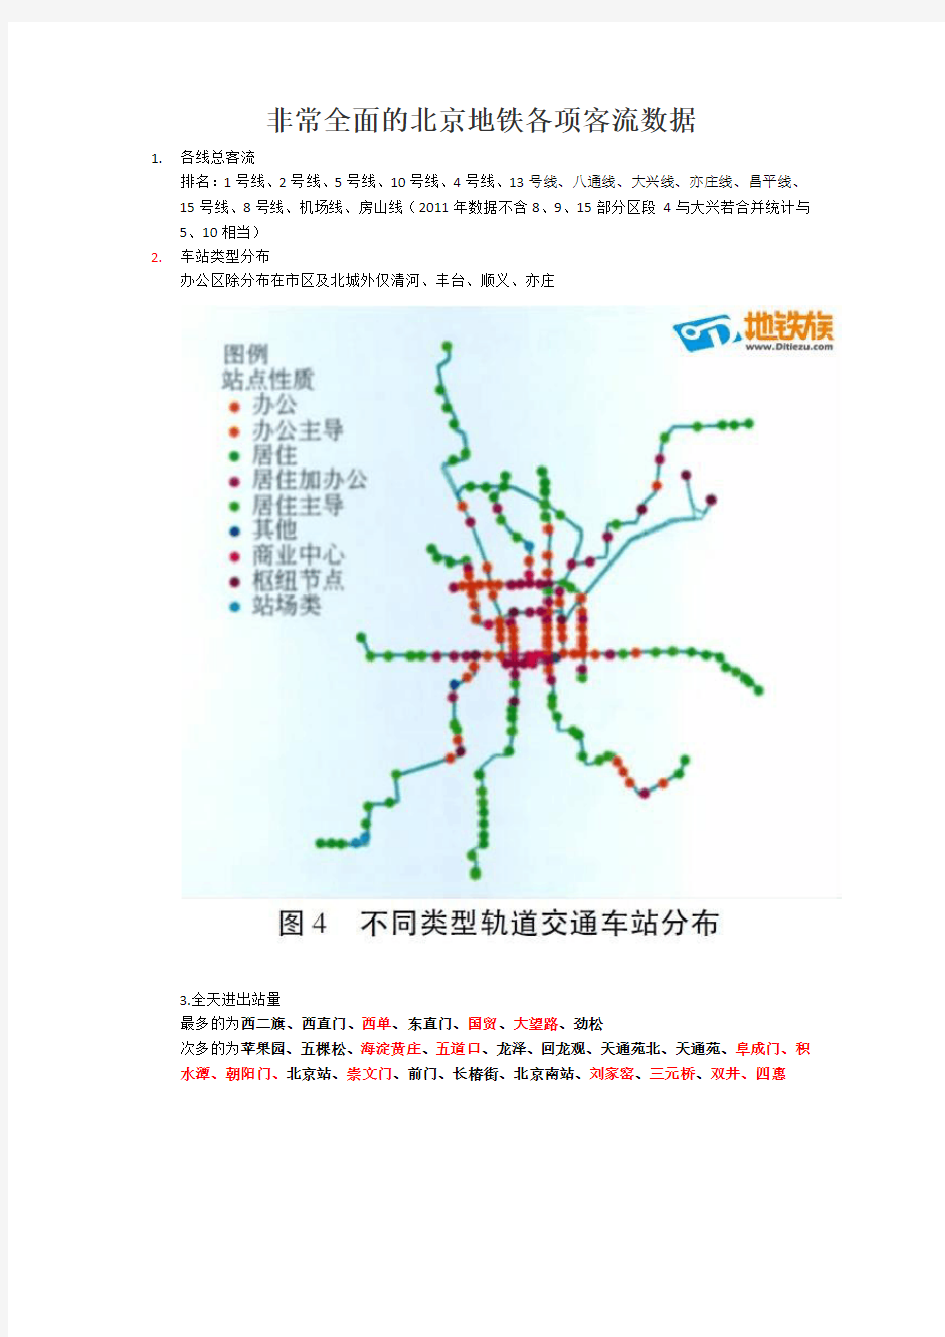 非常全面的北京地铁各项客流数据